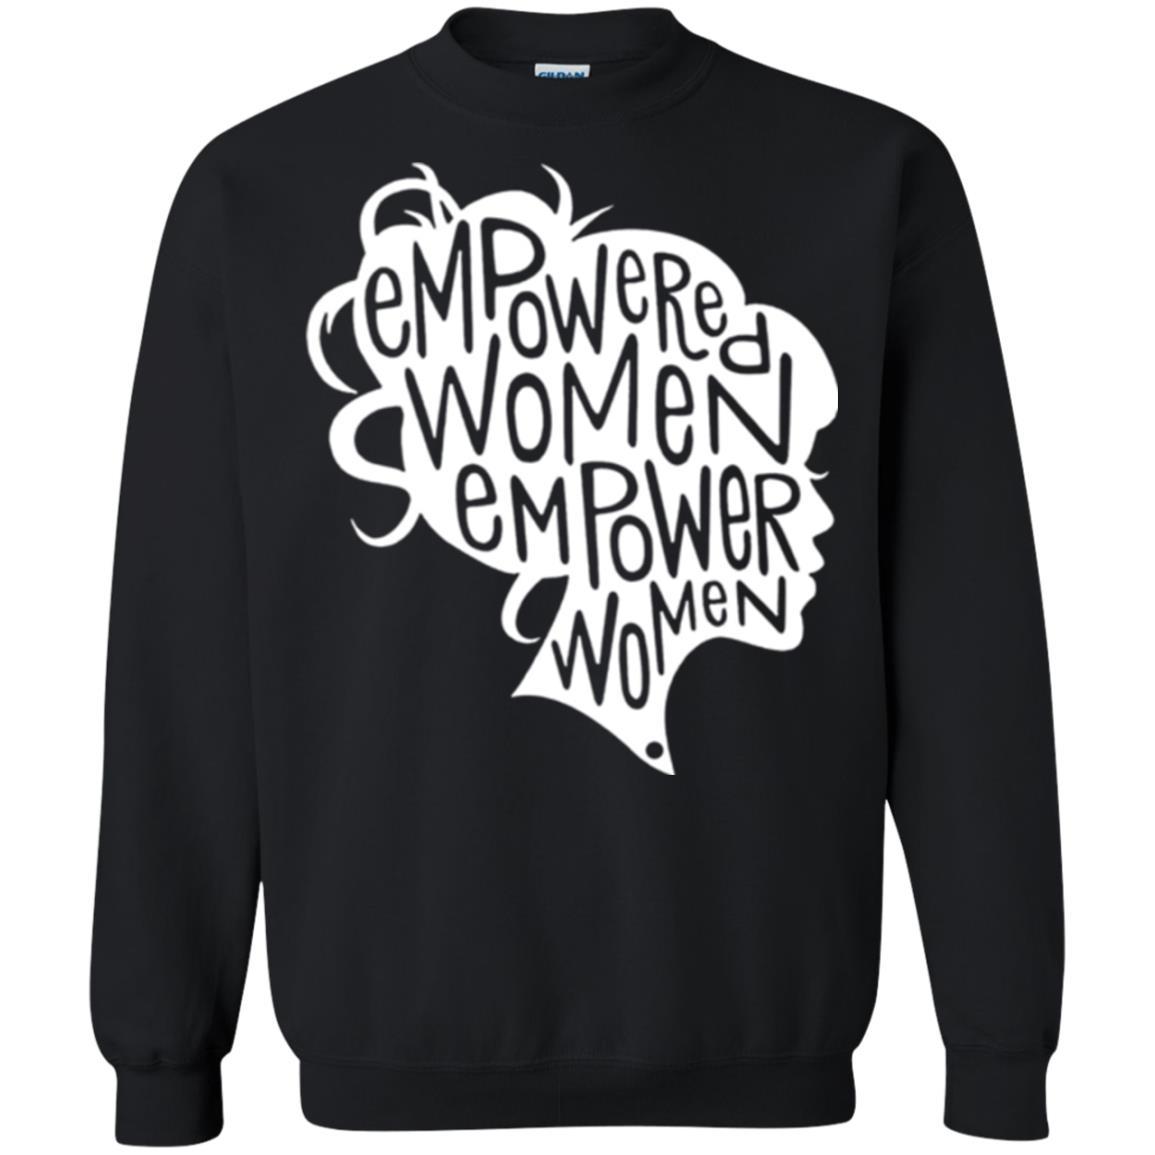 Feminist T-shirt Empowered Women Empower Woman